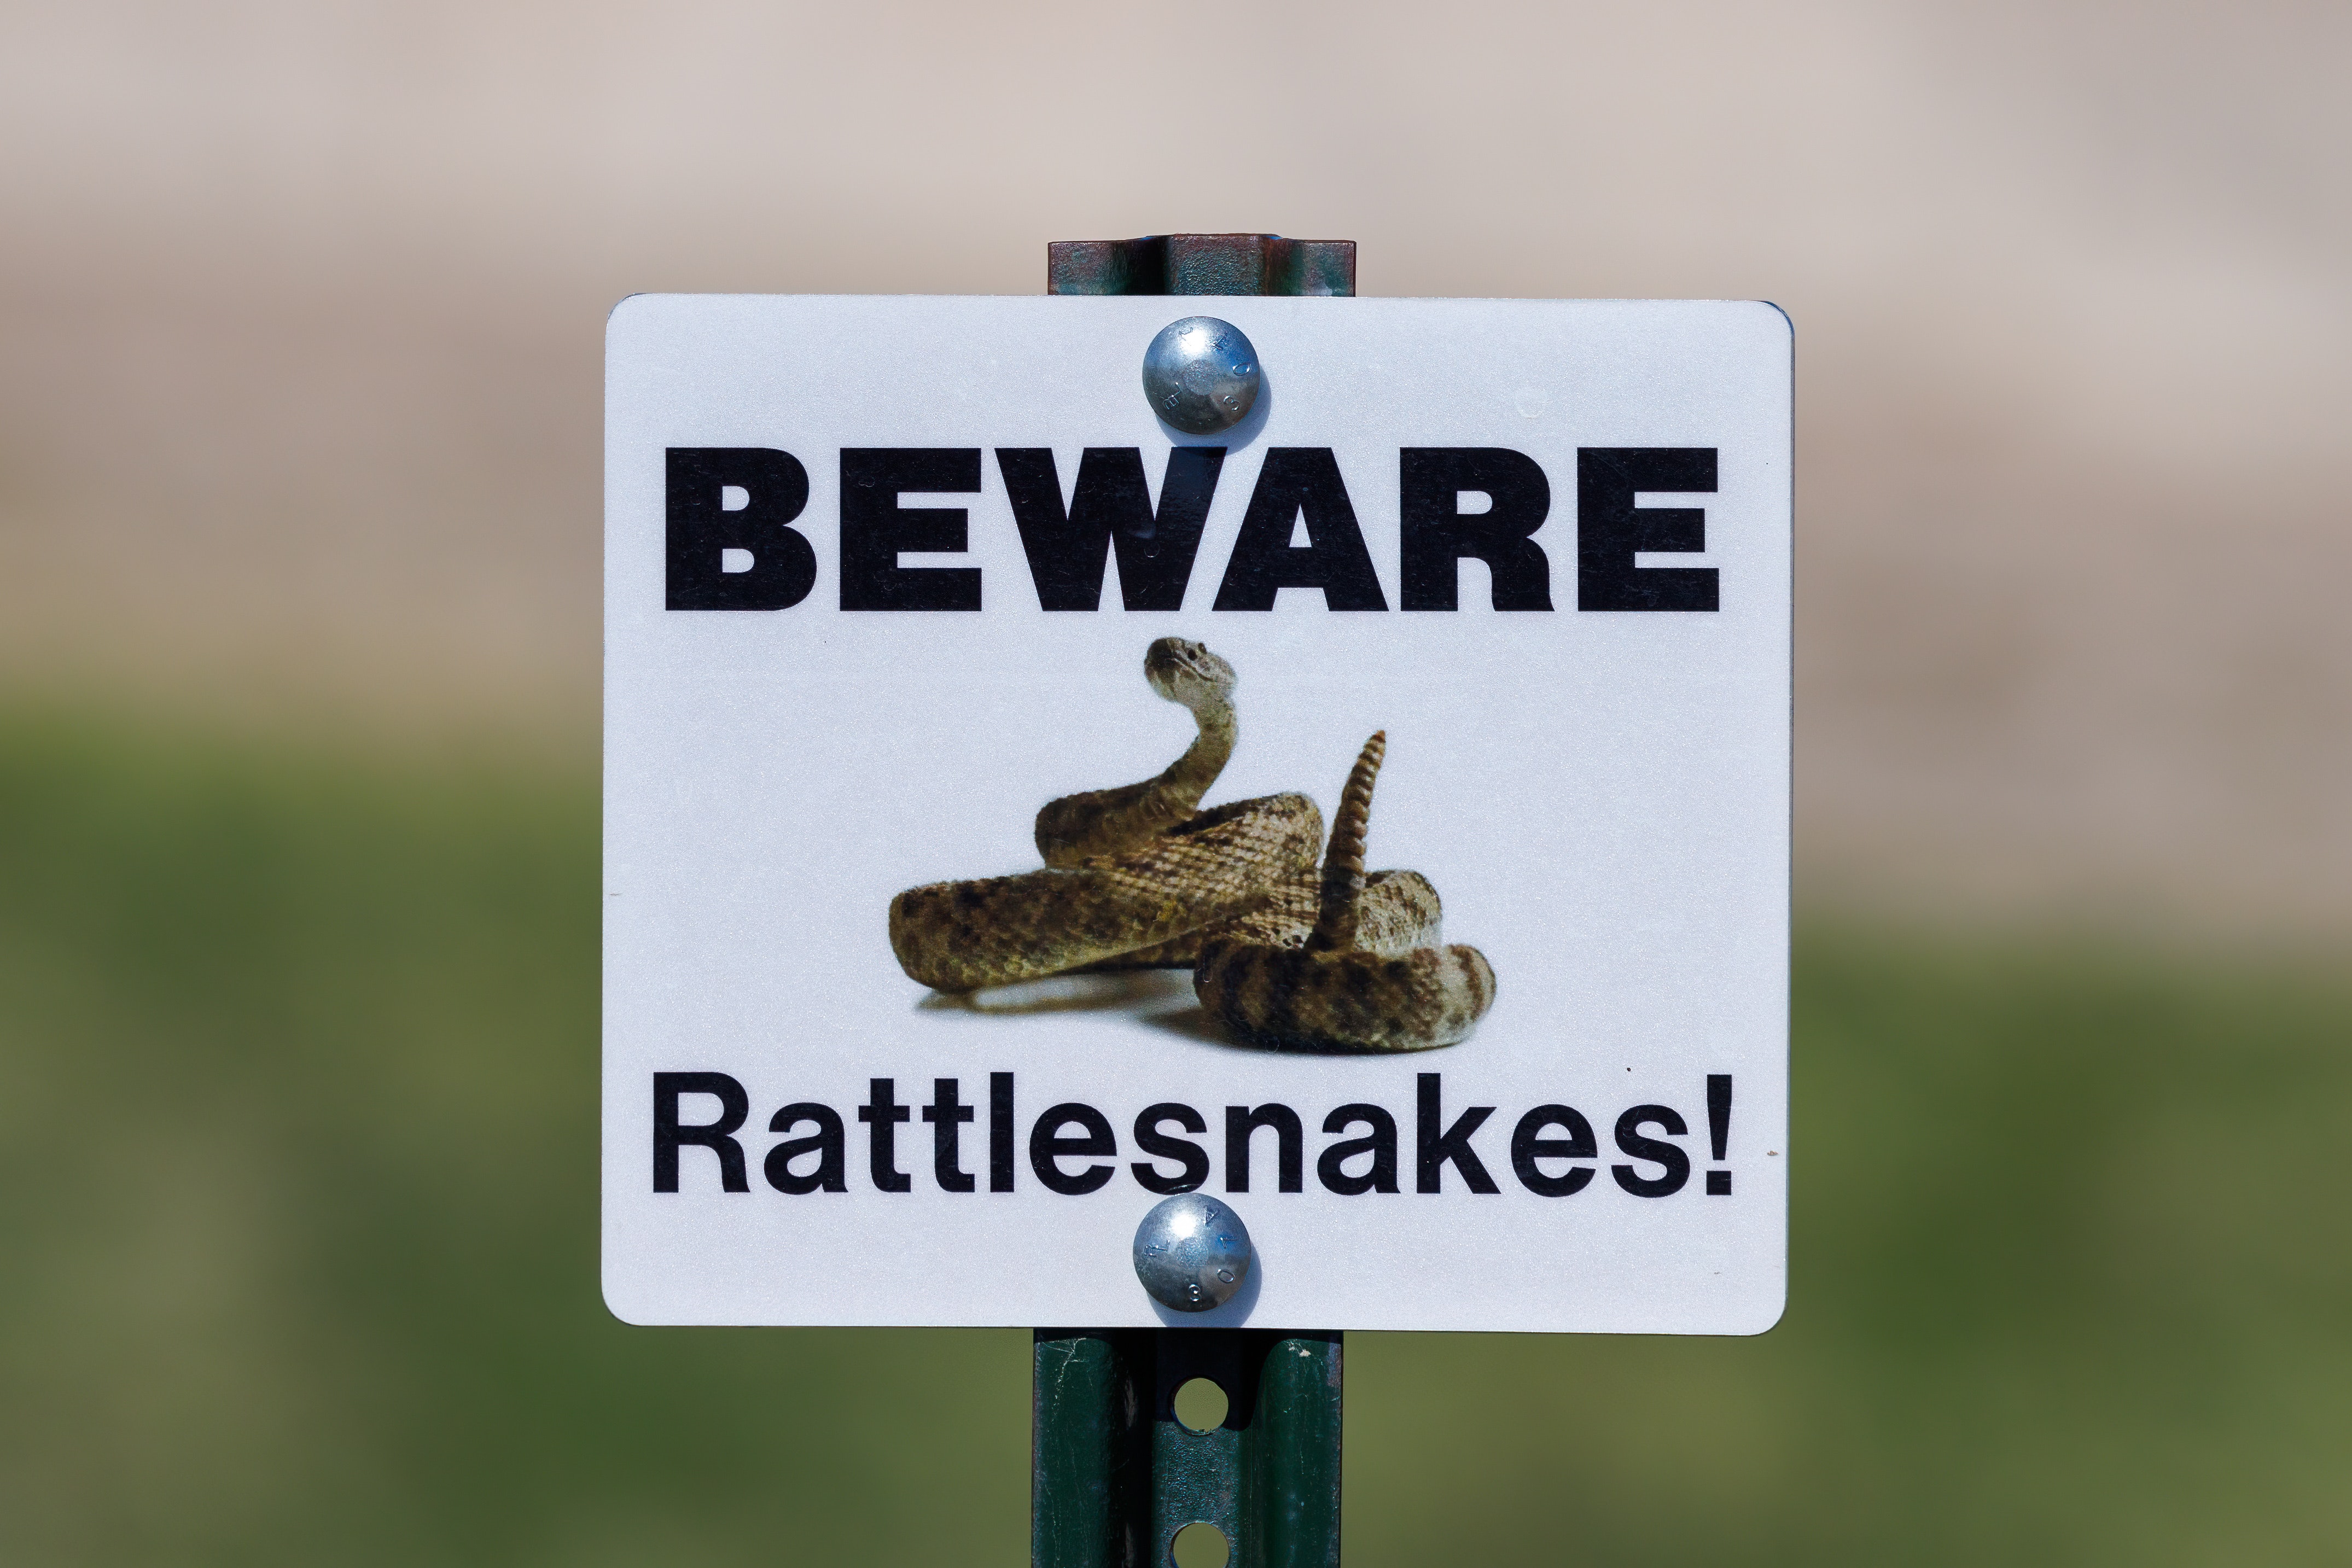 Rattlesnake Vaccine for Dogs